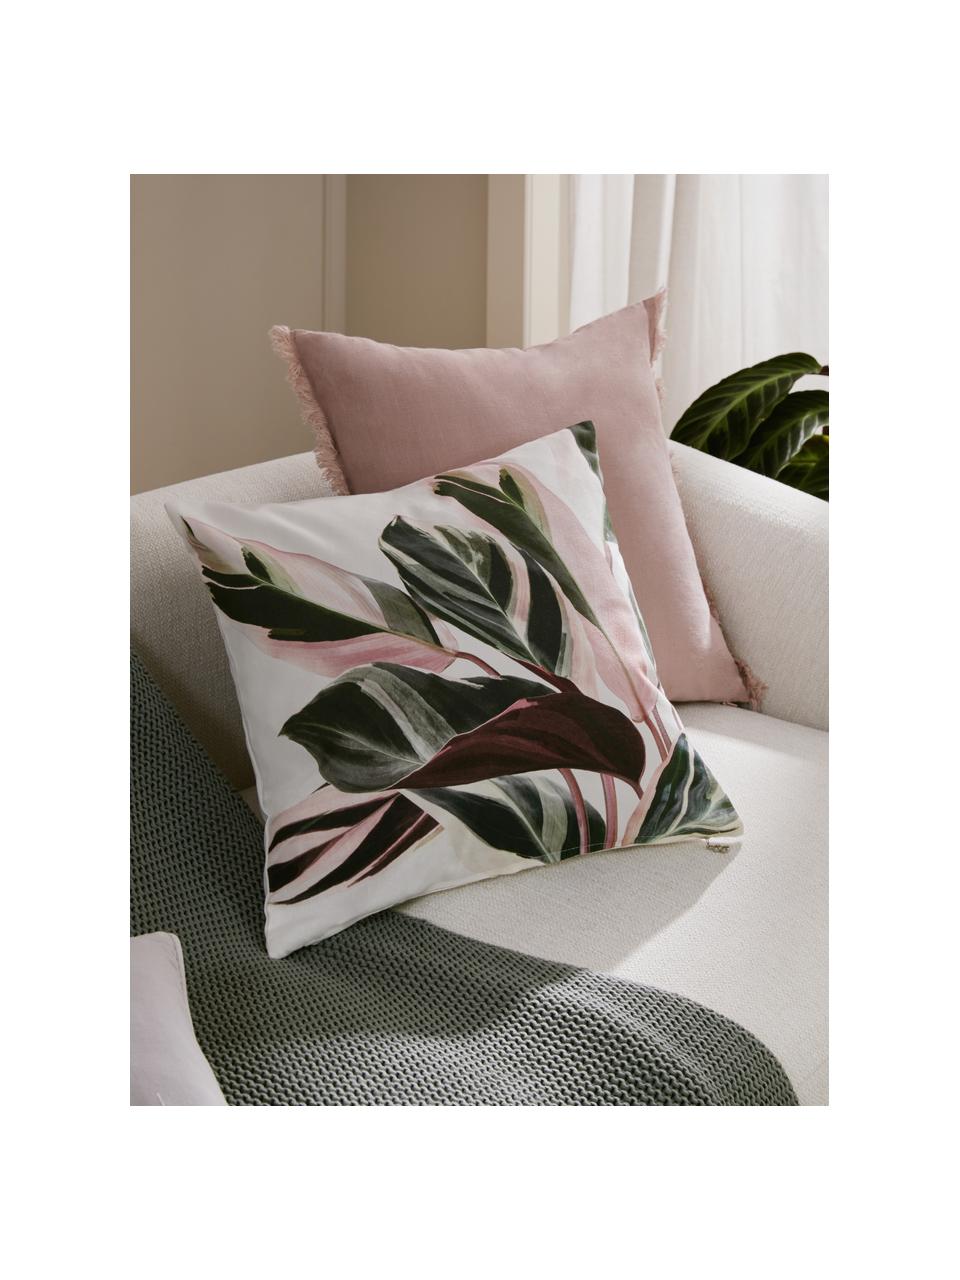 Katoenen kussenhoes Triostar met bloemenmotief, 100% katoen, Donkergroen, roze, crèmewit, B 50 x L 50 cm